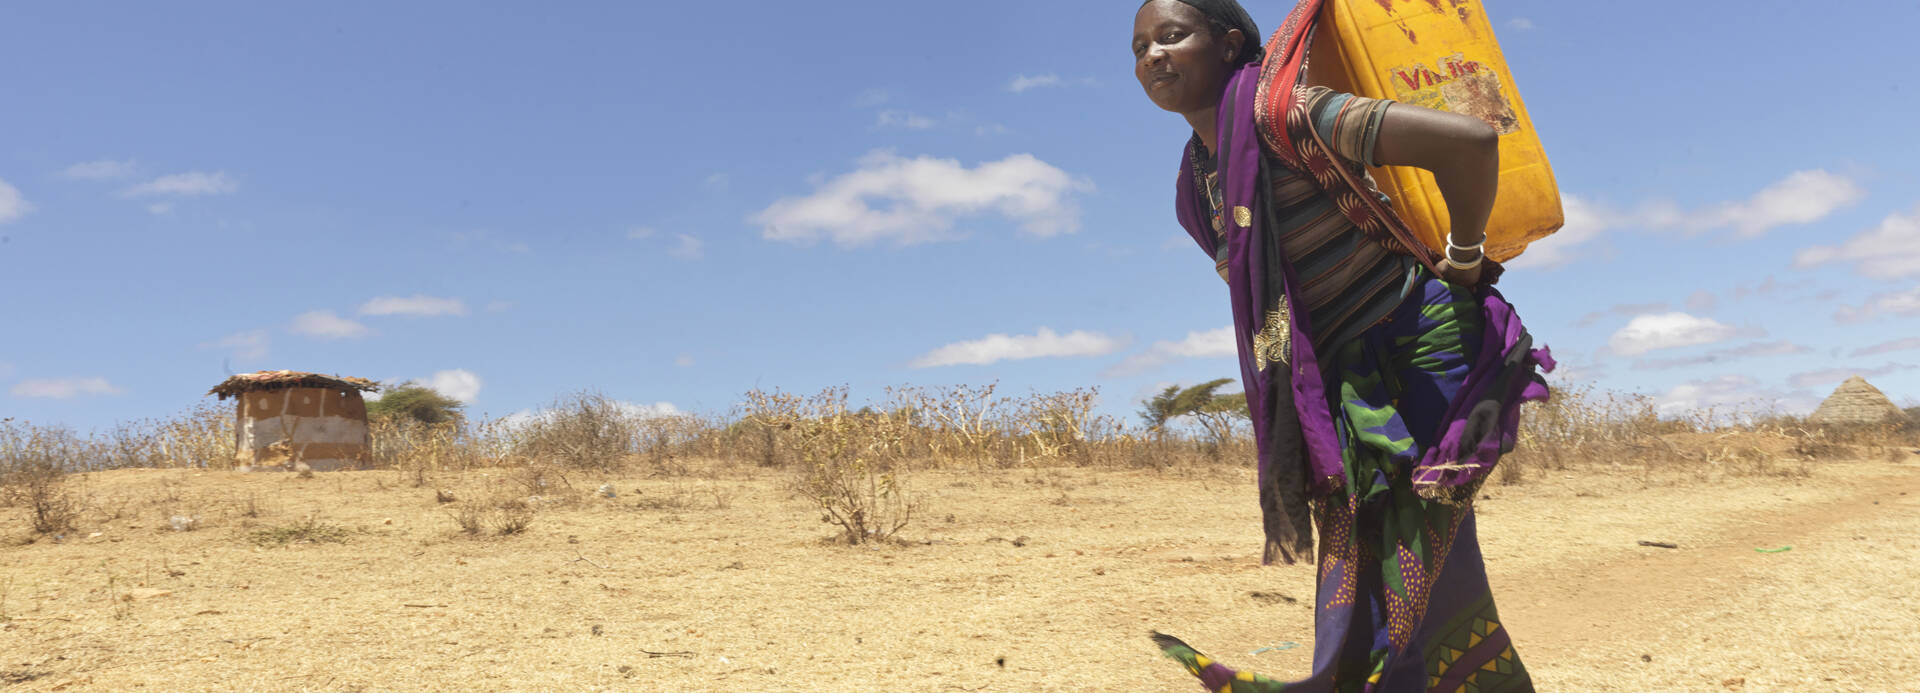 Eine Frau aus Äthiopien muss kilometerweit zur Wasserstelle laufen, um ihre Familie zu versorgen.